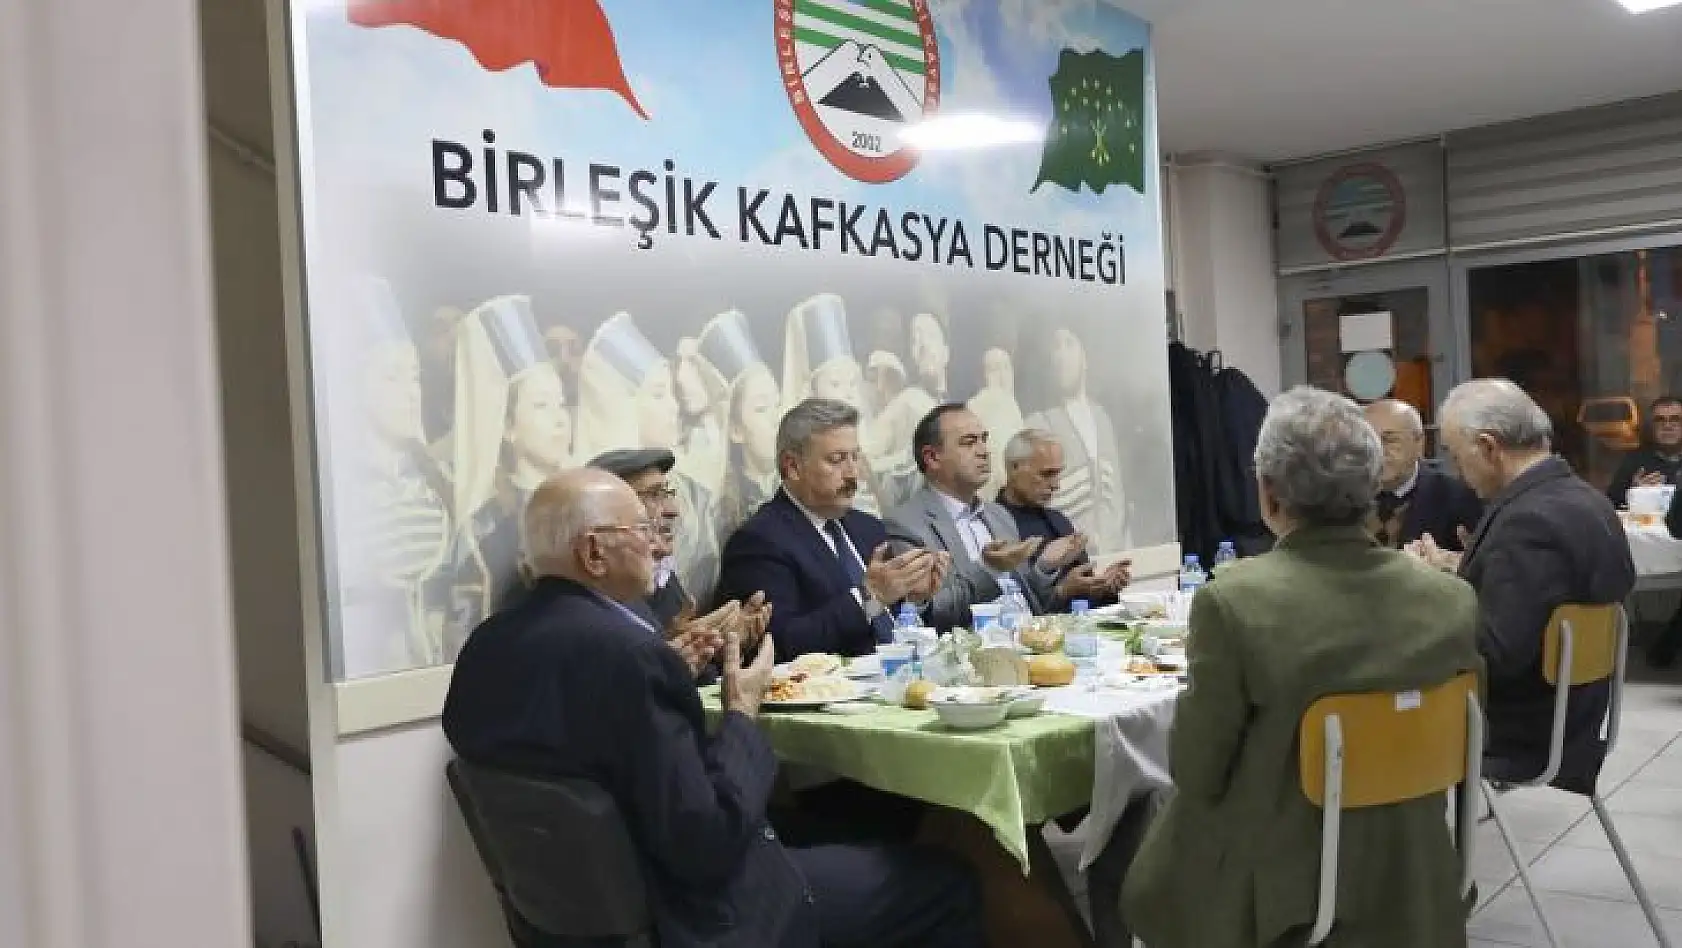 Palancıoğlu, iftarı Birleşik Kafkasya Derneği'nde açtı